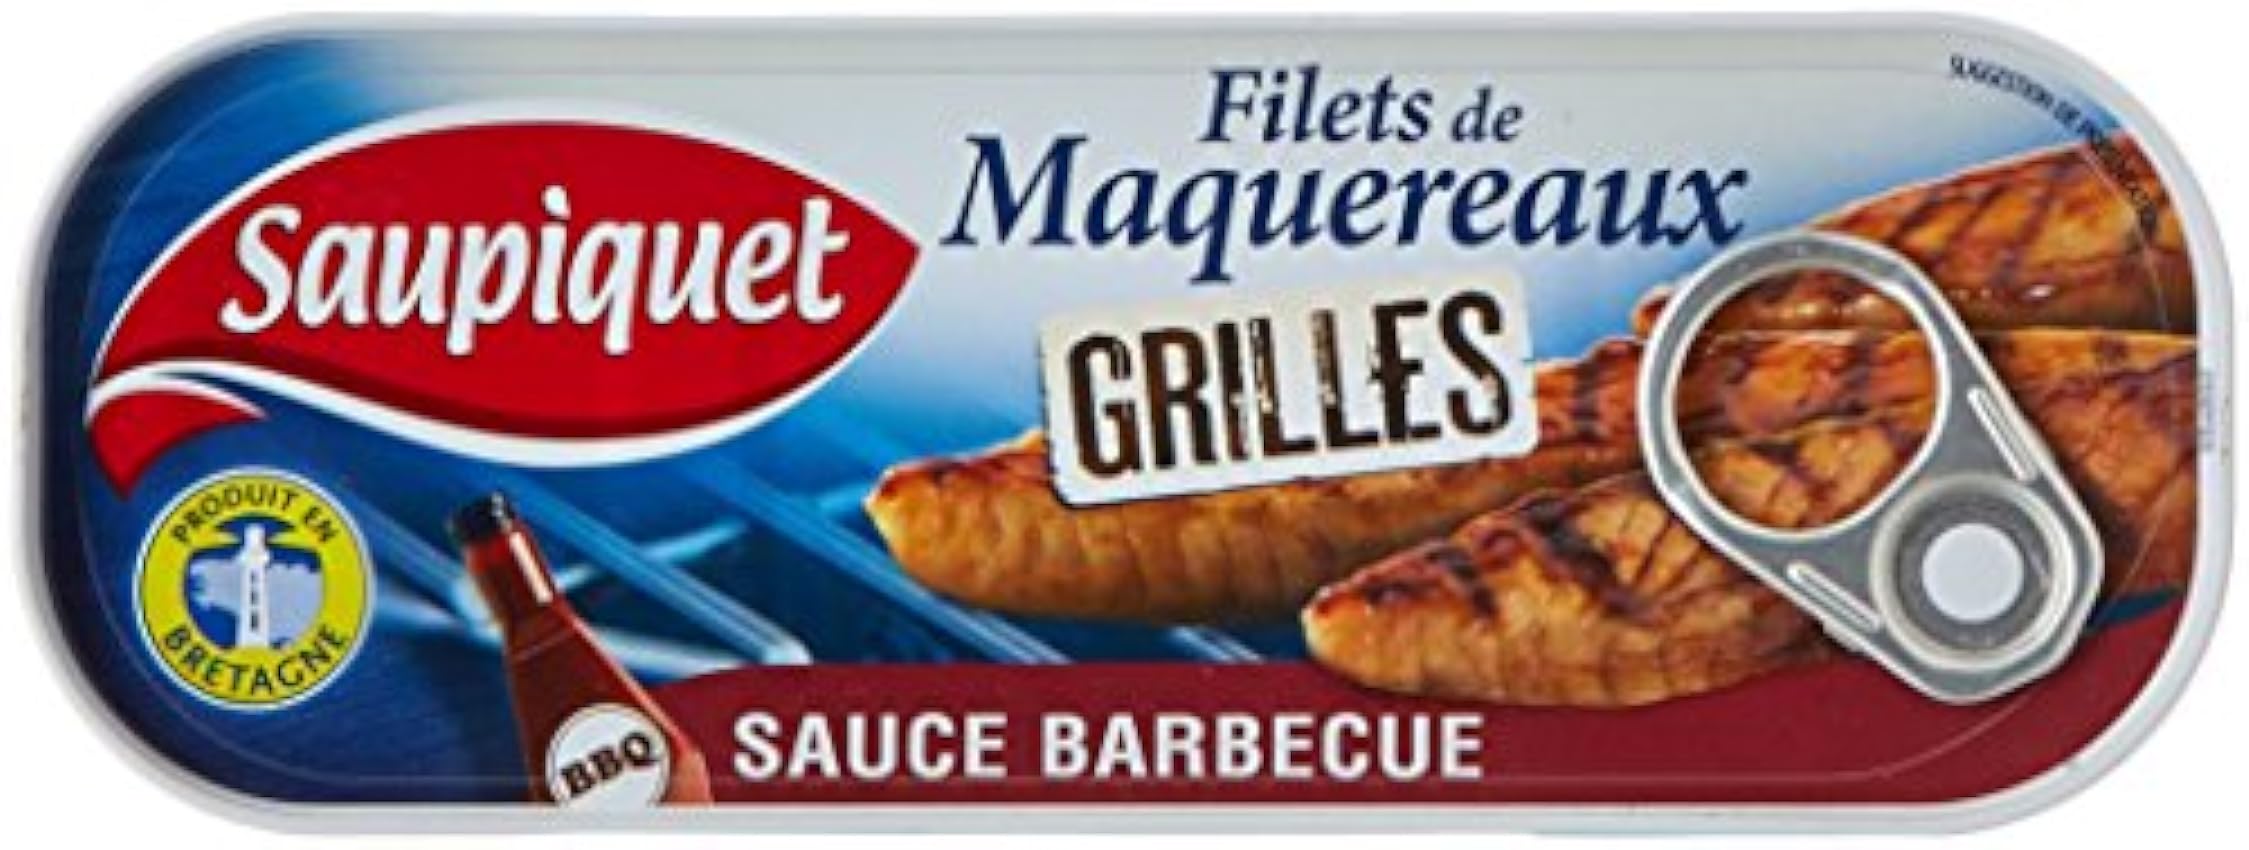 Saupiquet Filets de Maquereaux Grillés Sauce Barbecue 1